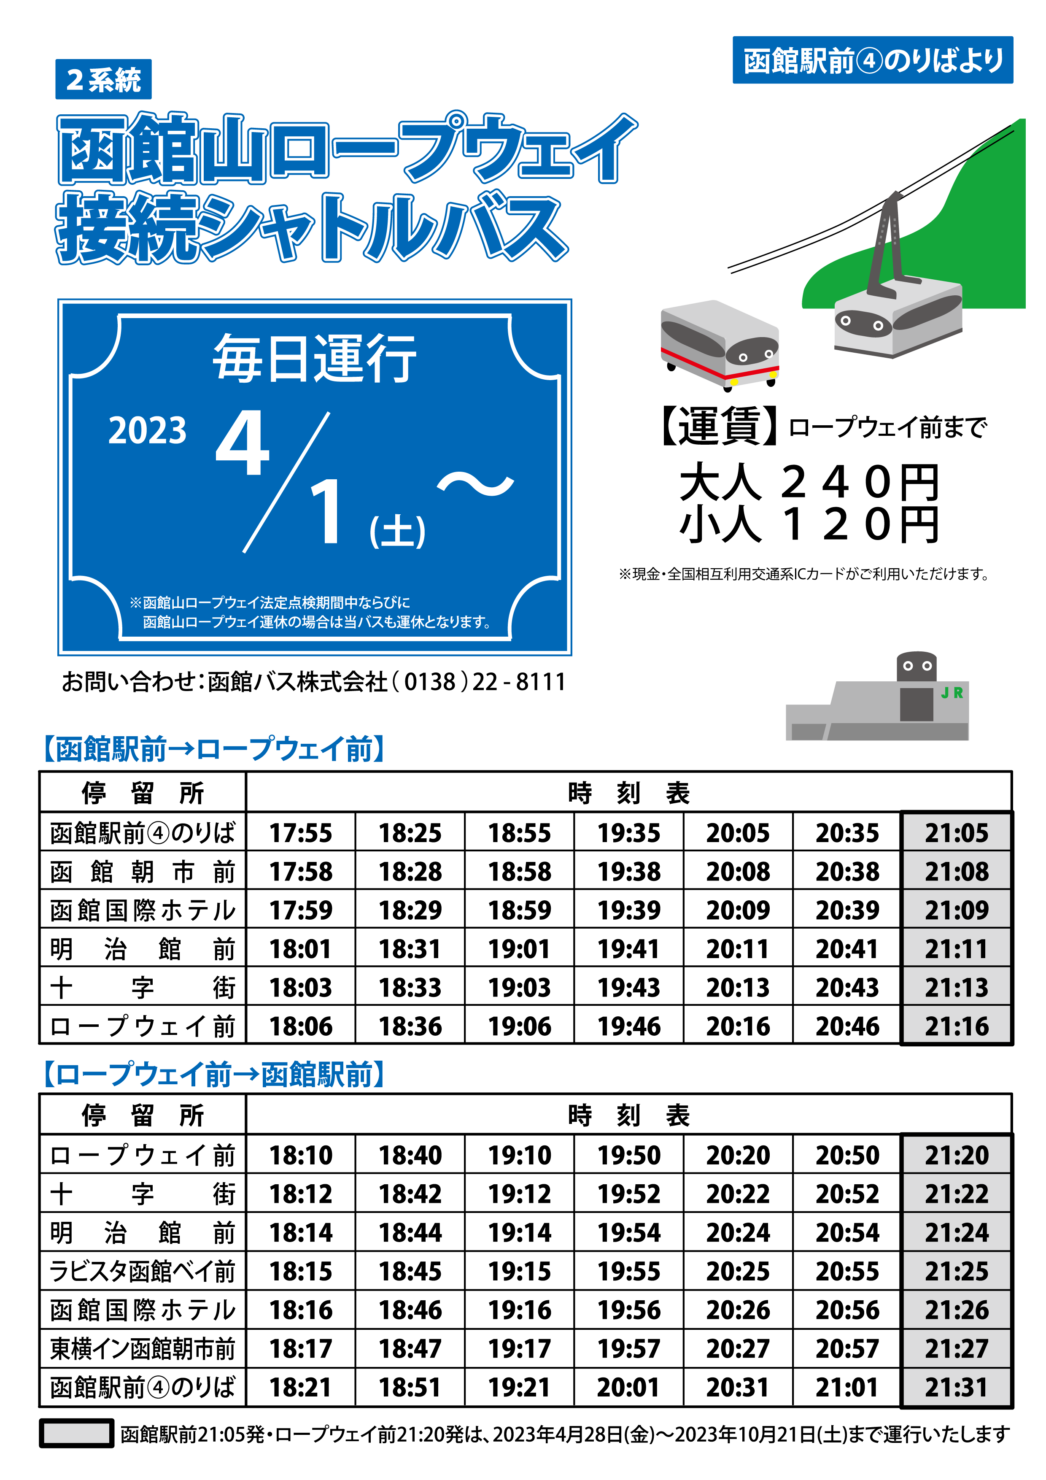 函館バス観光路線バスまとめ（2023年7月時点） / お知らせ / 函館